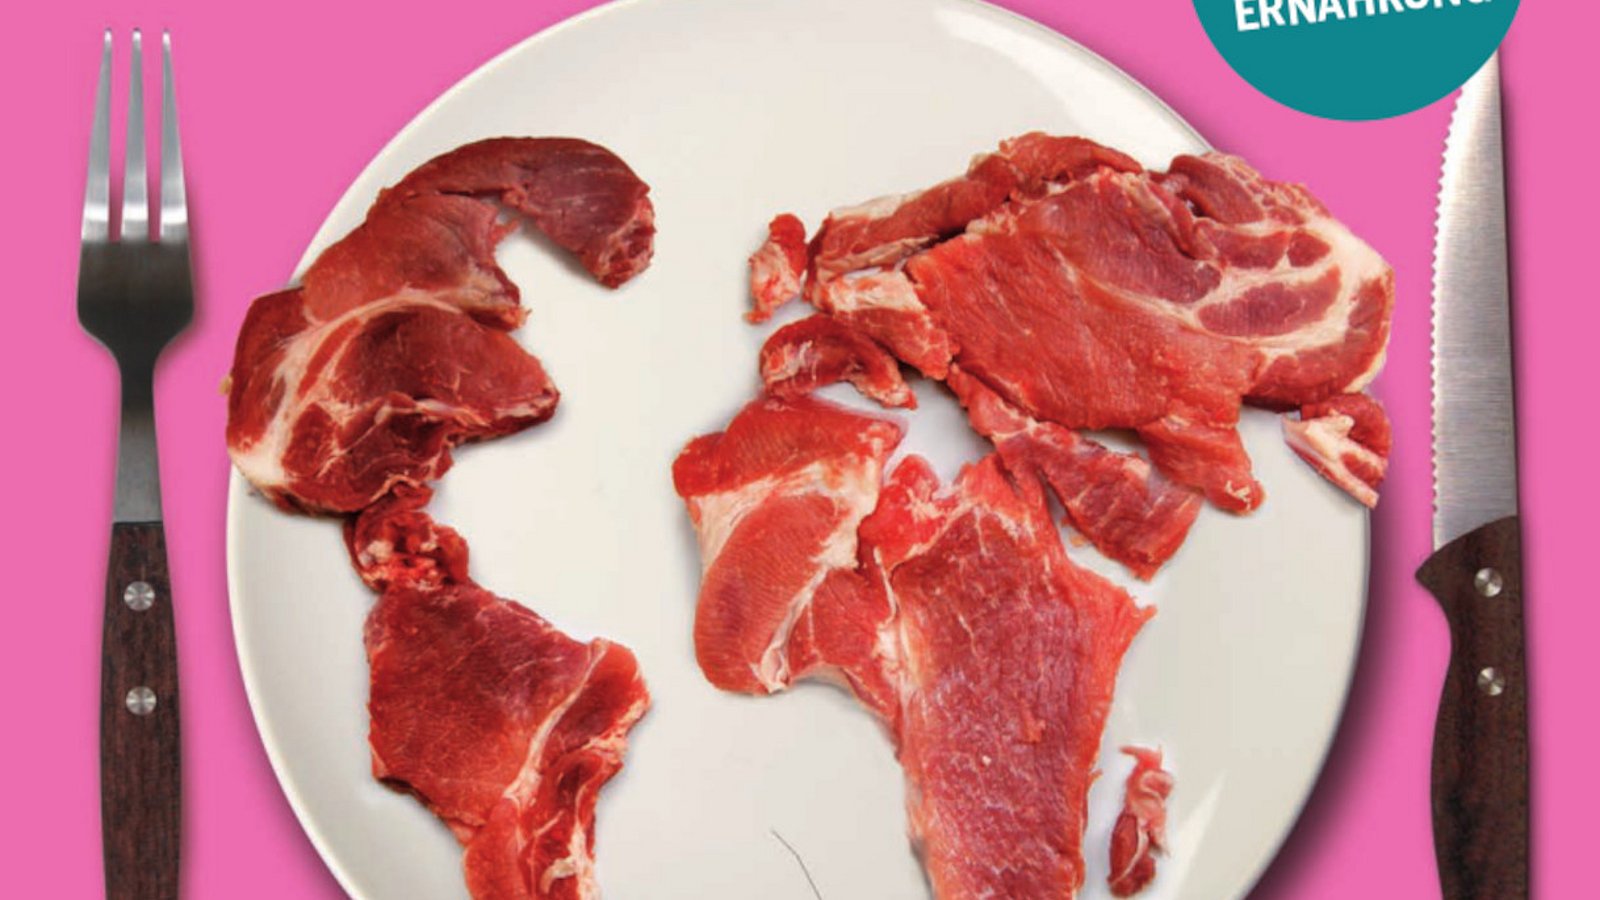 Titelfoto Fleischatlas 2021, Teller mit Fleisch in Form der Erdteile